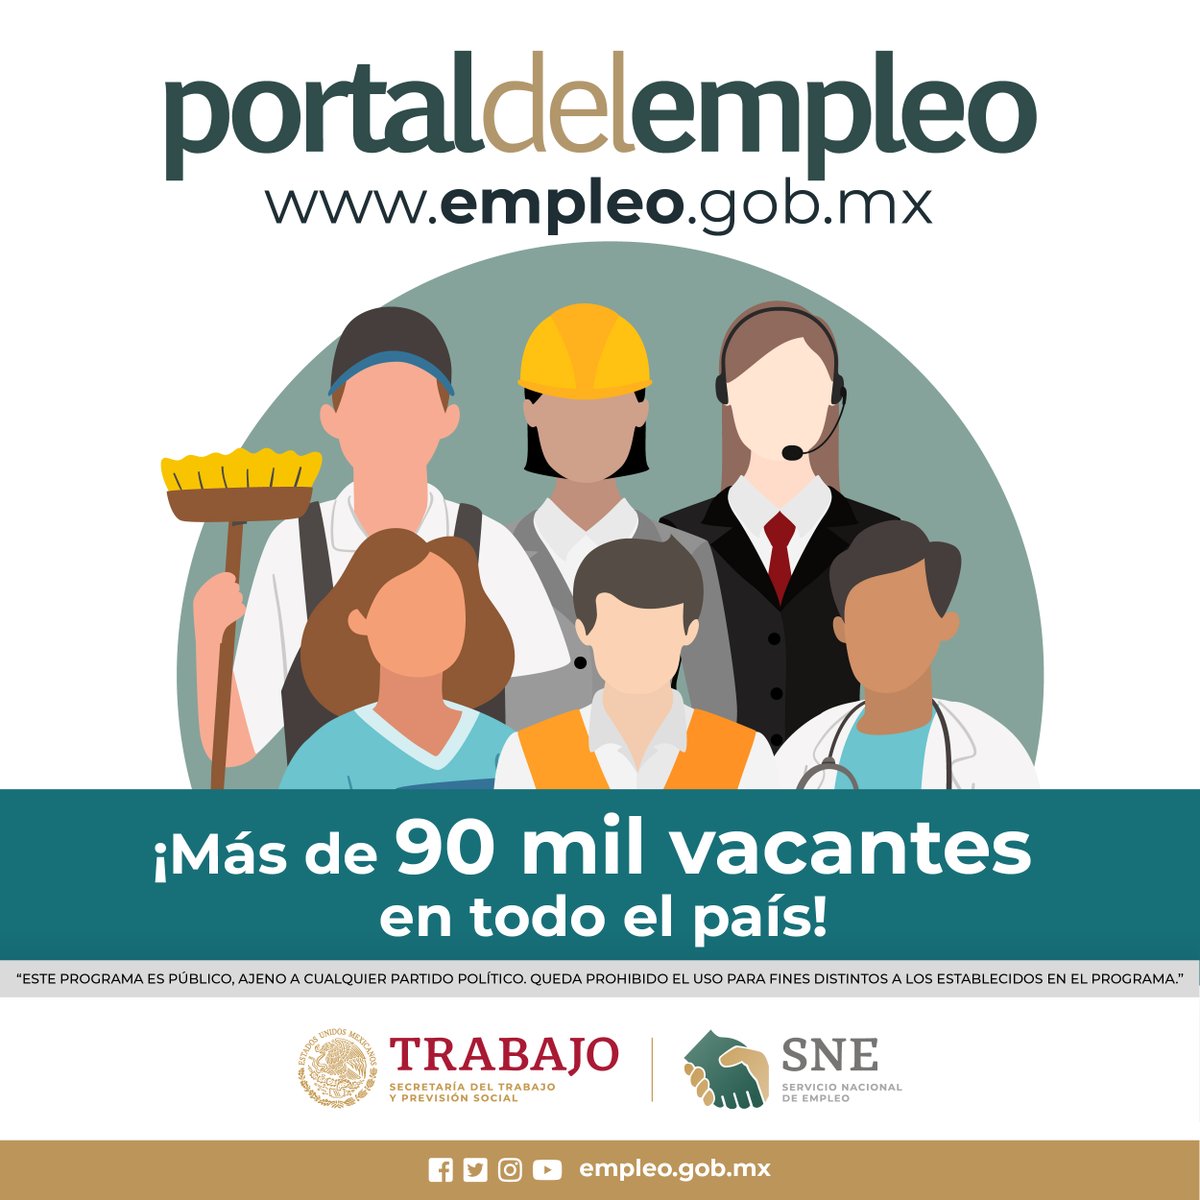 Encuentra #Trabajo en el #PortalDelEmpleo. ​

​¡Regístrate, busca y postúlate! 🧑‍💼👩‍💼​

🔗 Ingresa en: empleo.gob.mx ​

📞 Llama al: 800 841 2020